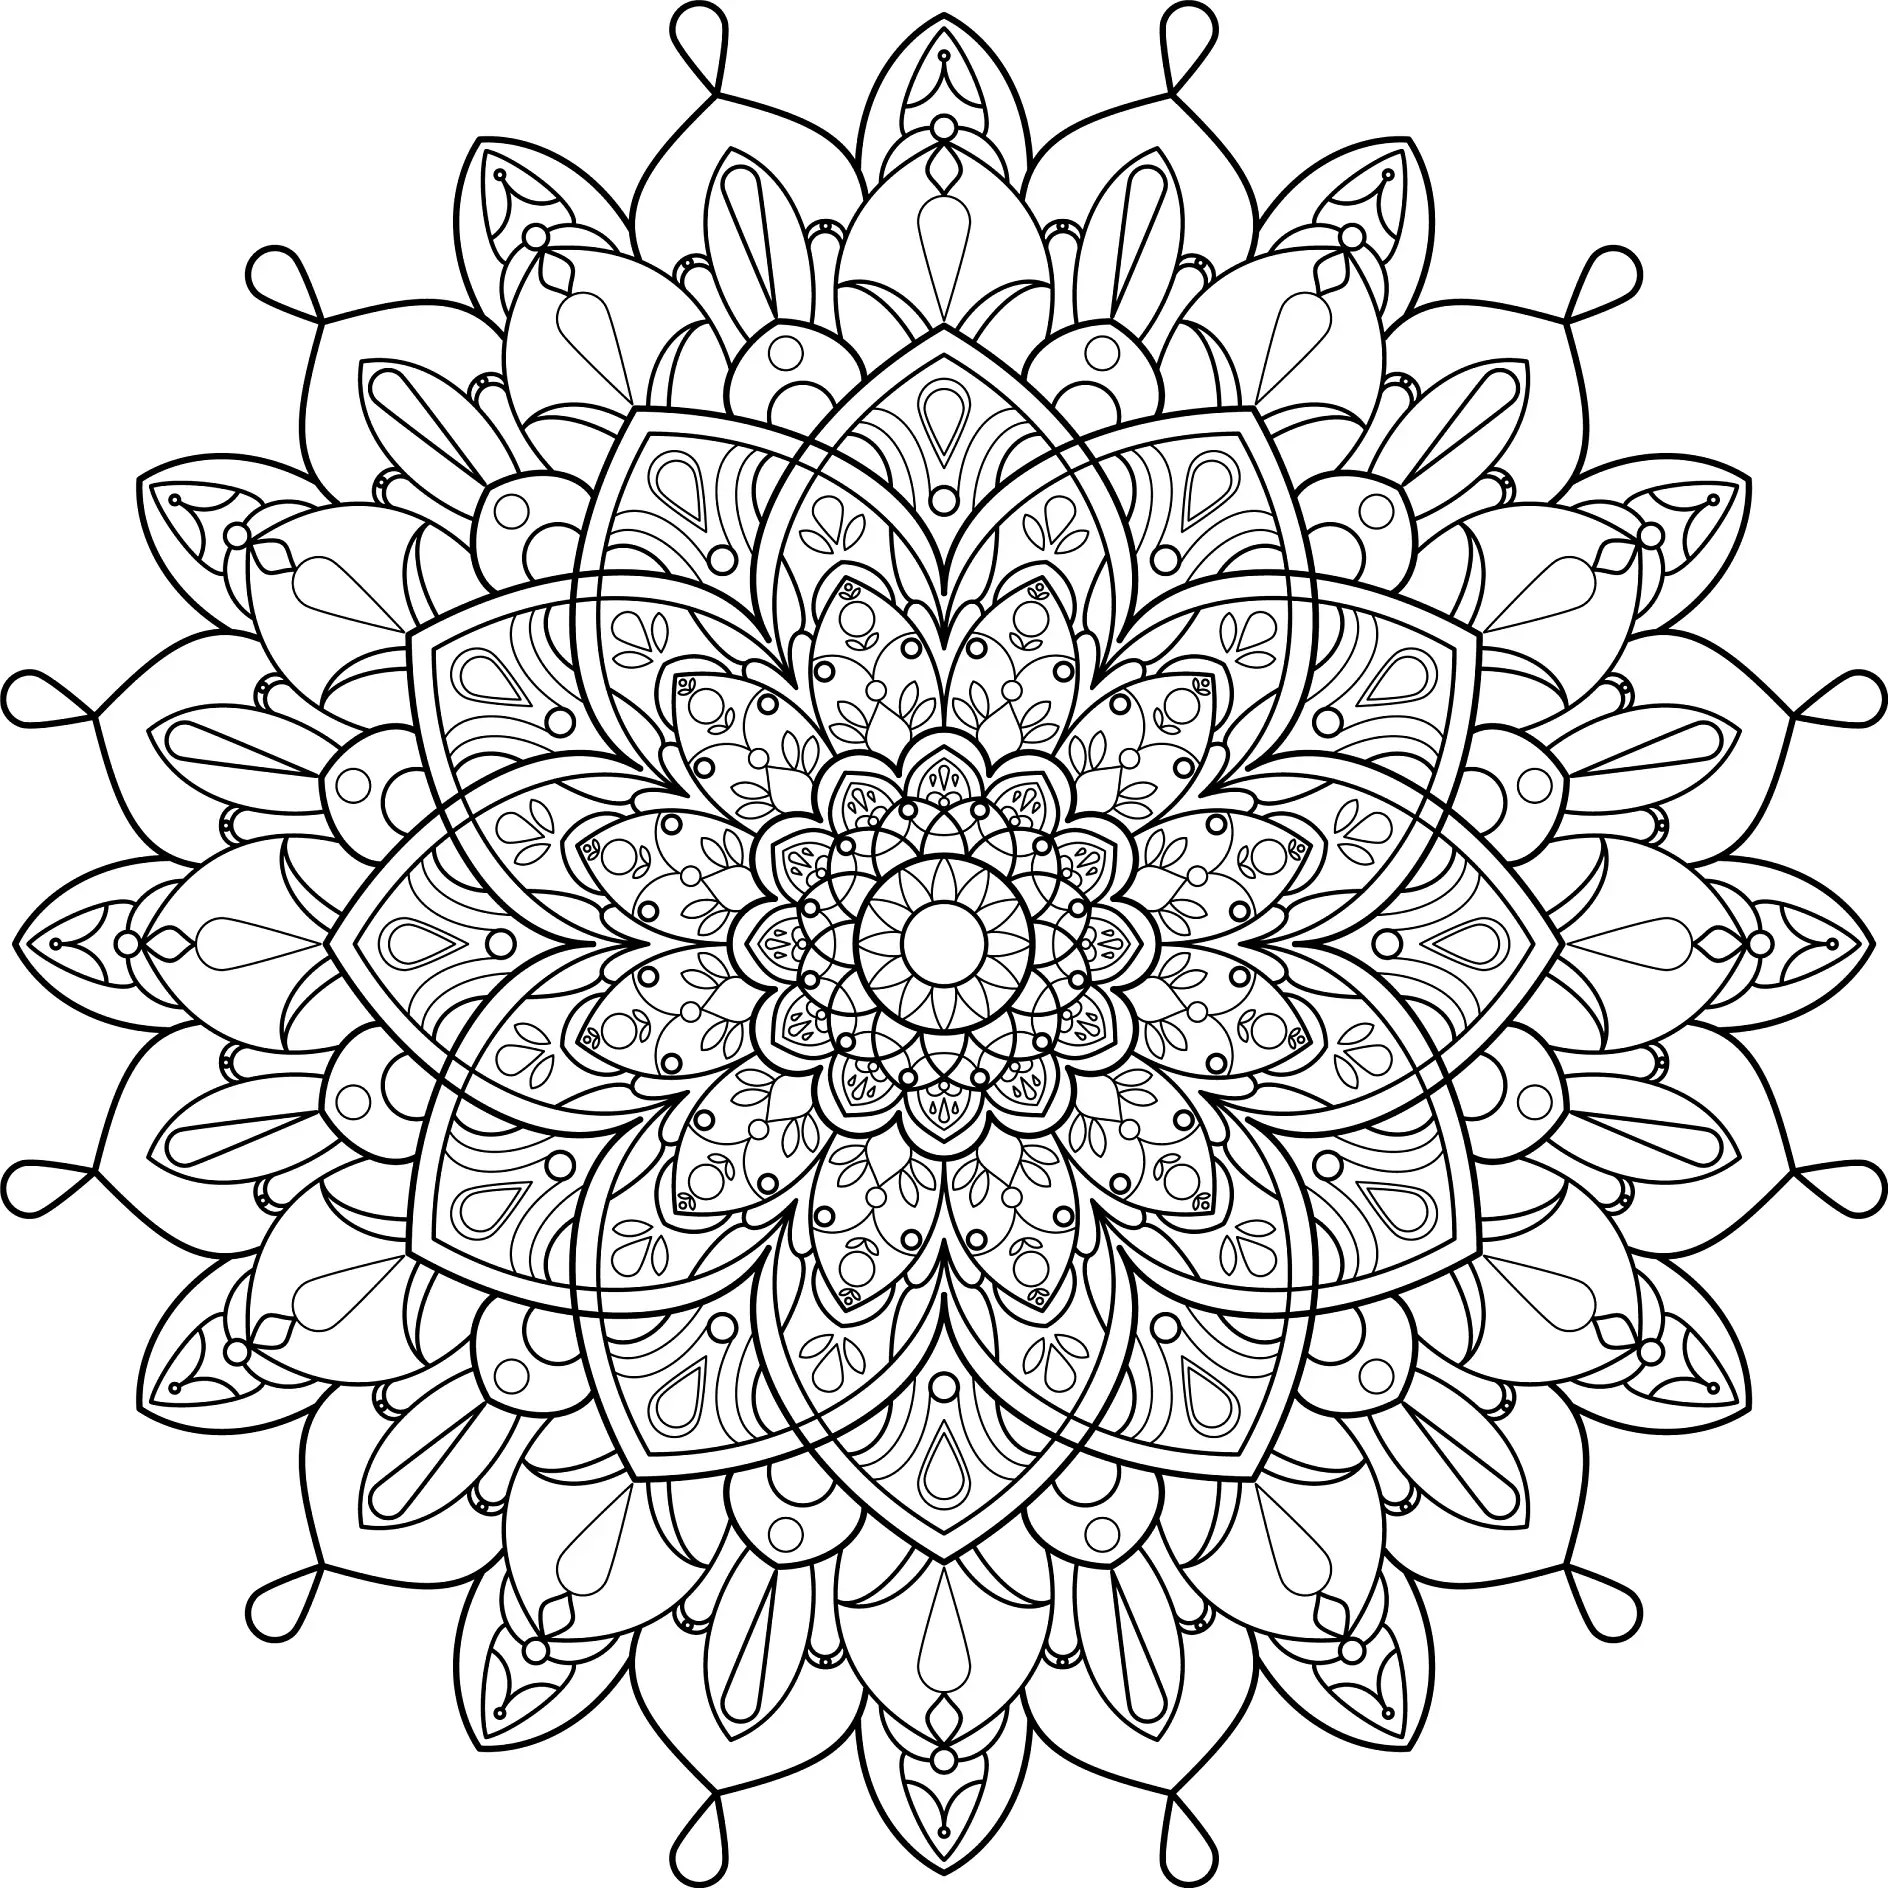 Ausmalbild Mandala mit detaillierten floralen Mustern und Formen